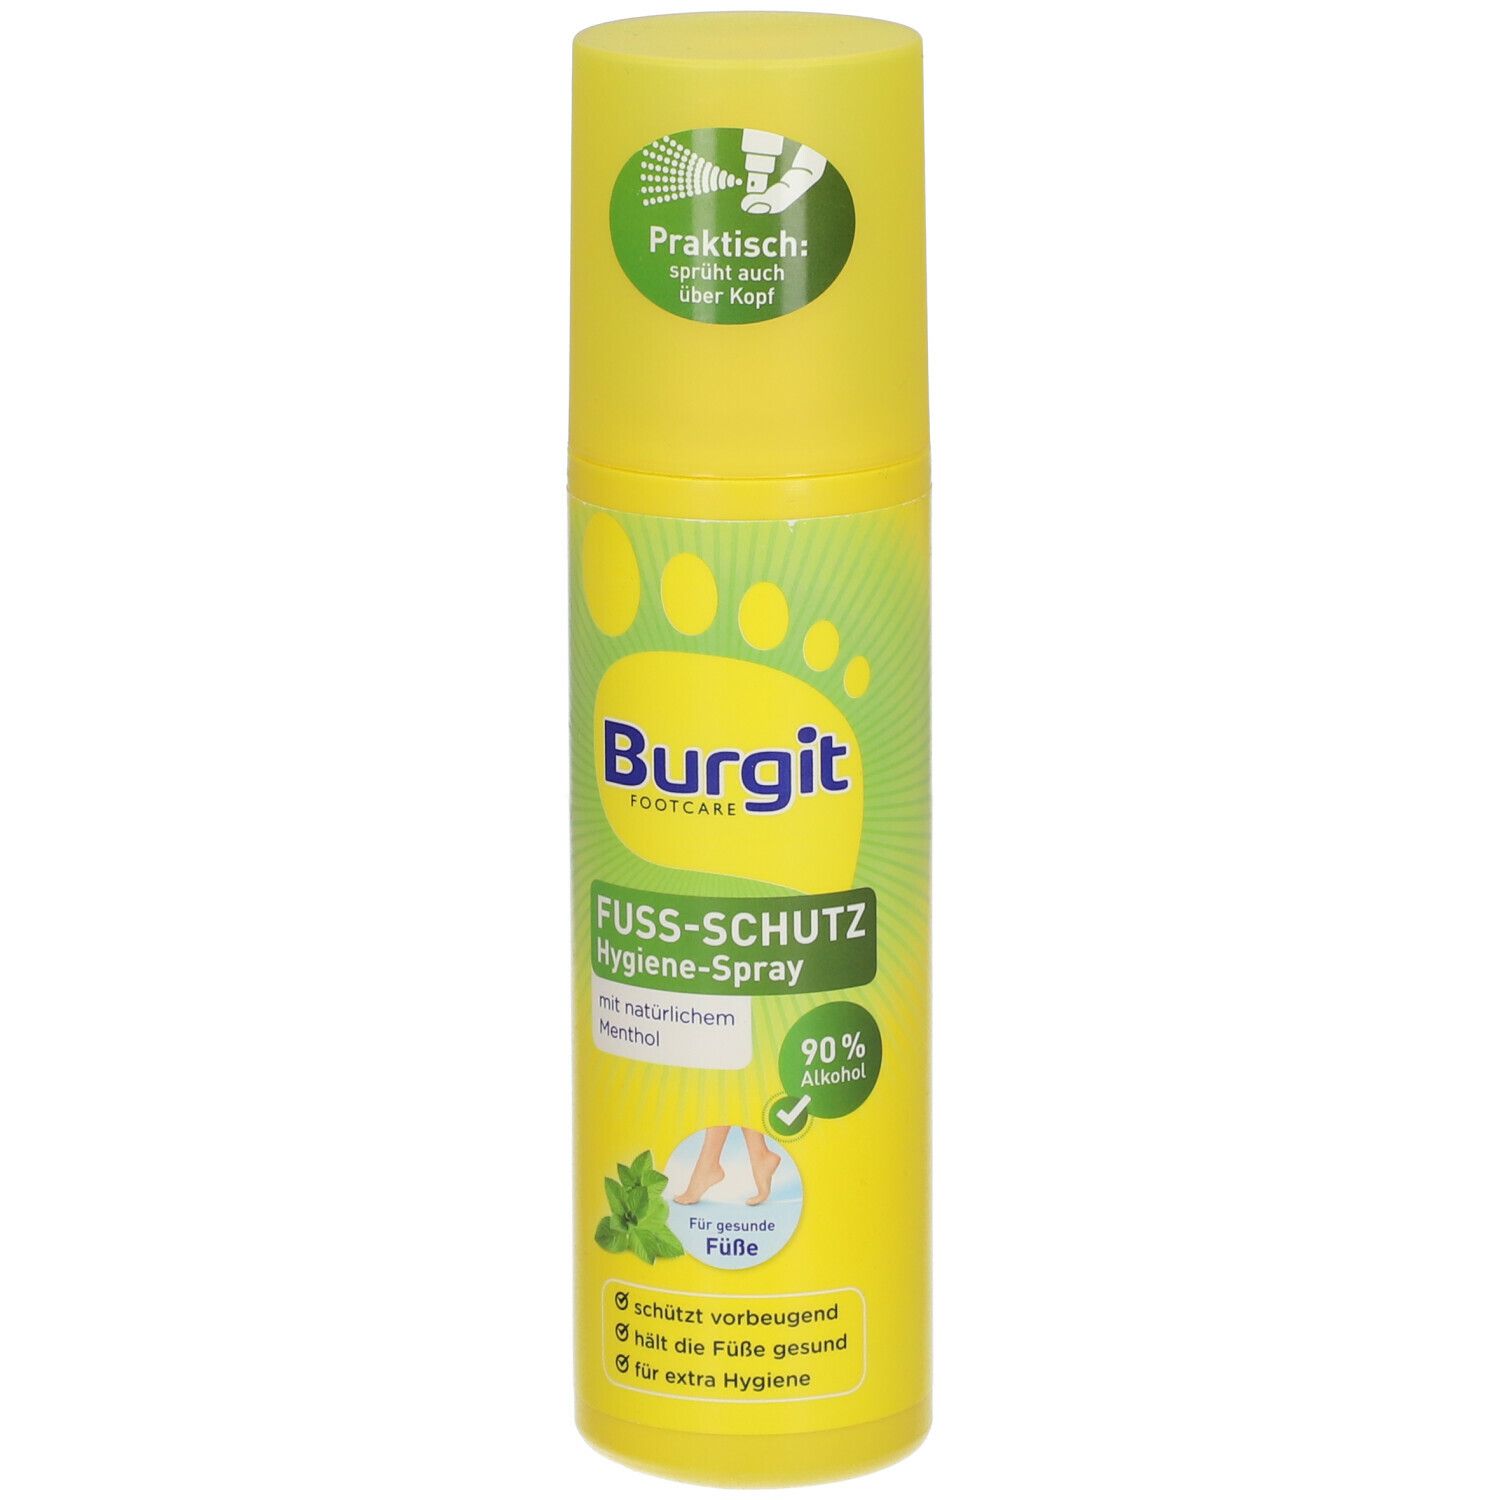 Burgit Fuß-Schutz-Hygiene-Spray